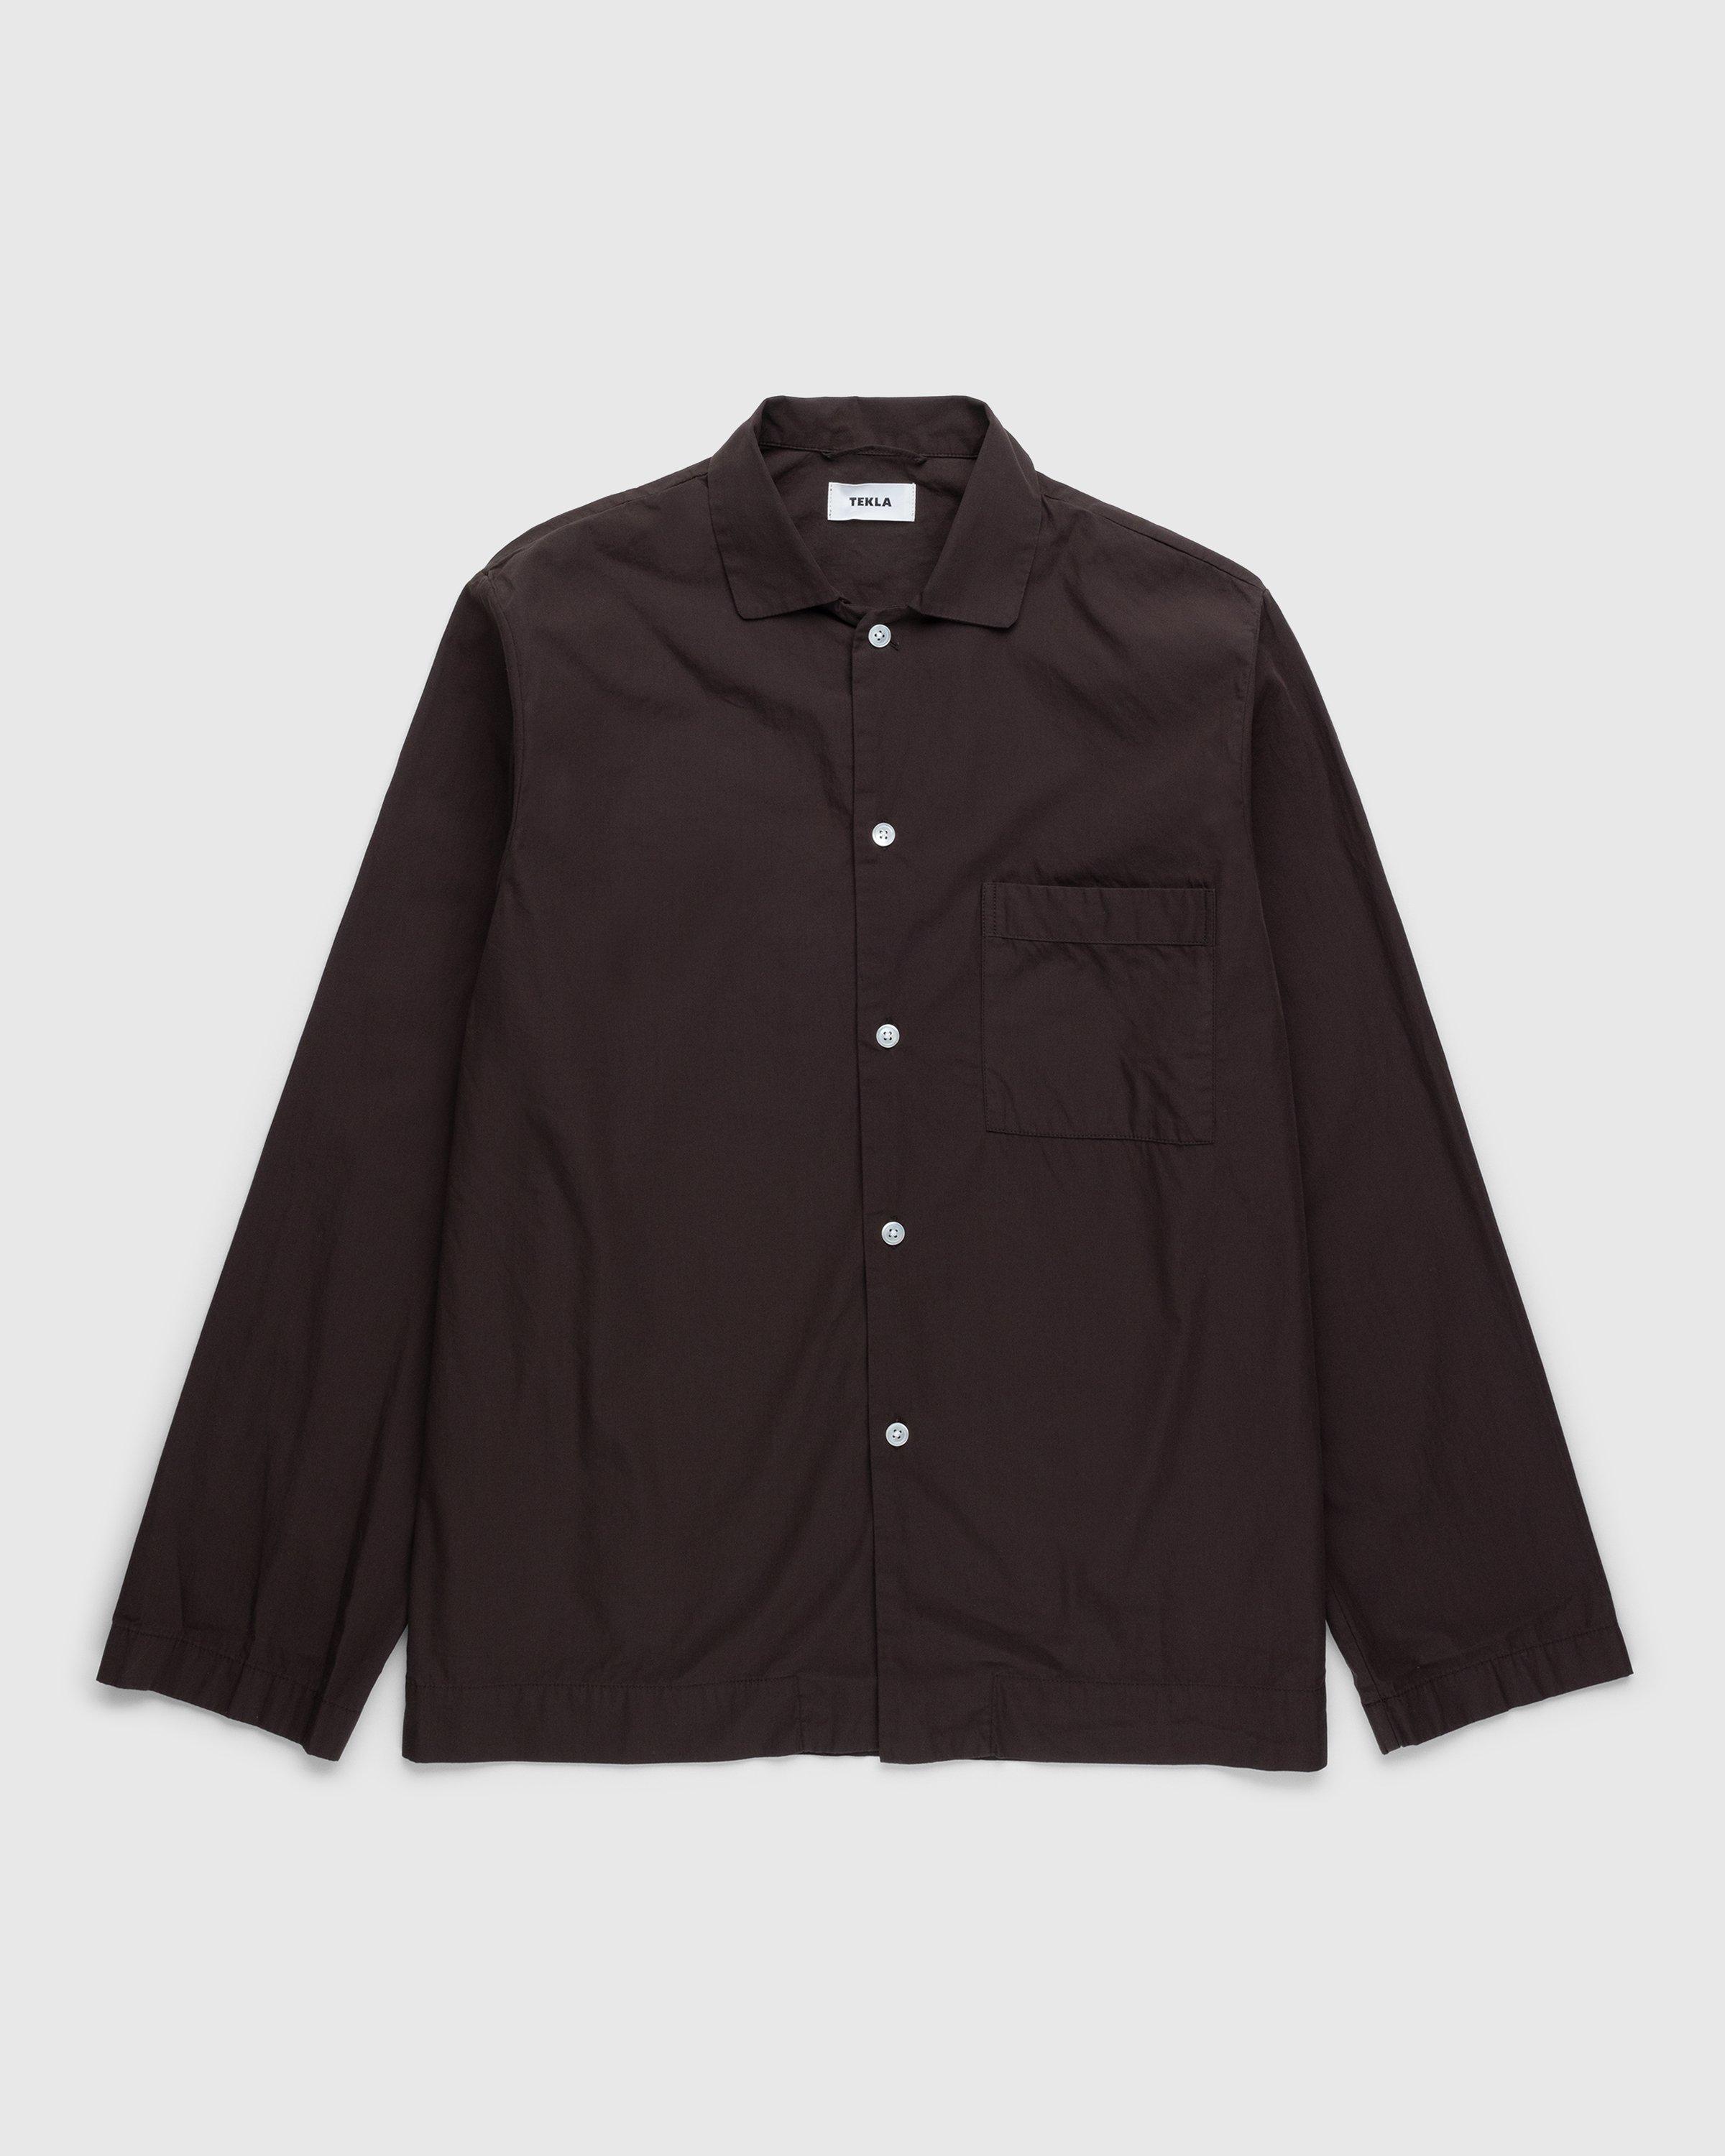 Tekla - Cotton Poplin Pyjamas Shirt Coffee - Clothing - Brown - Image 1